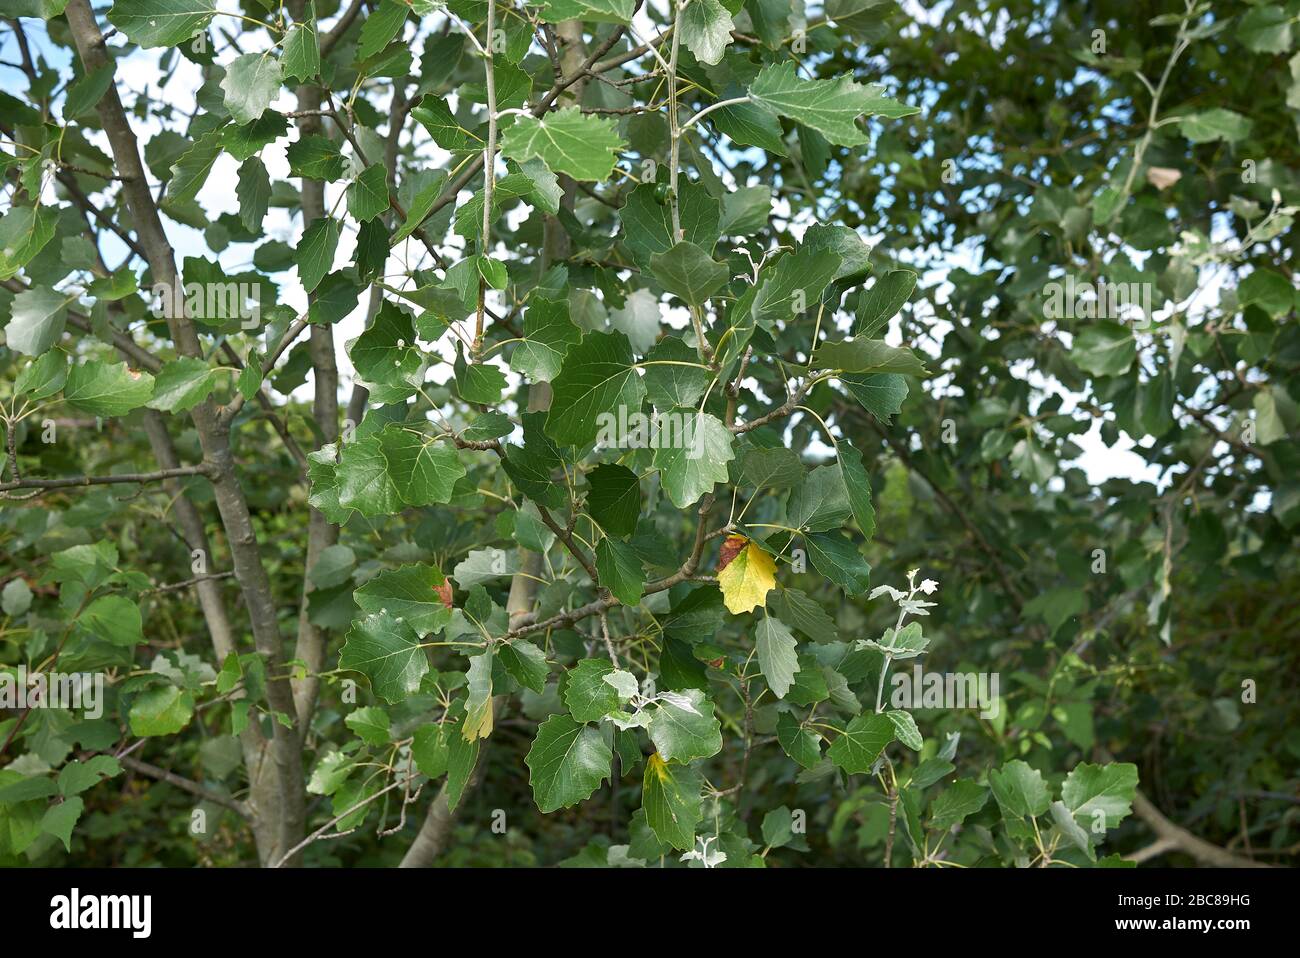 Populus alba silver foliage Stock Photo